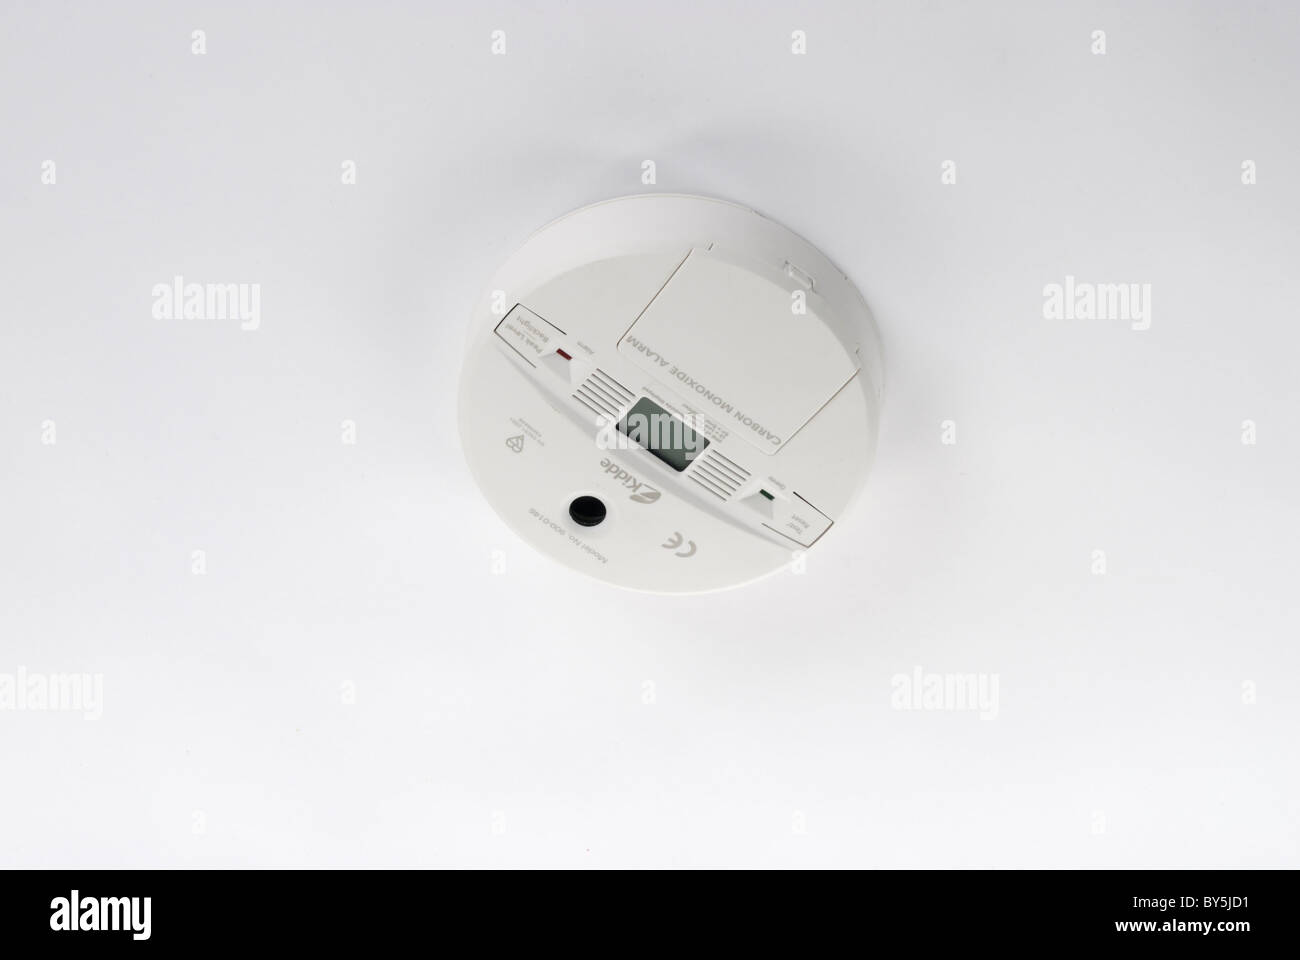 Carbon monoxide detector Stock Photo